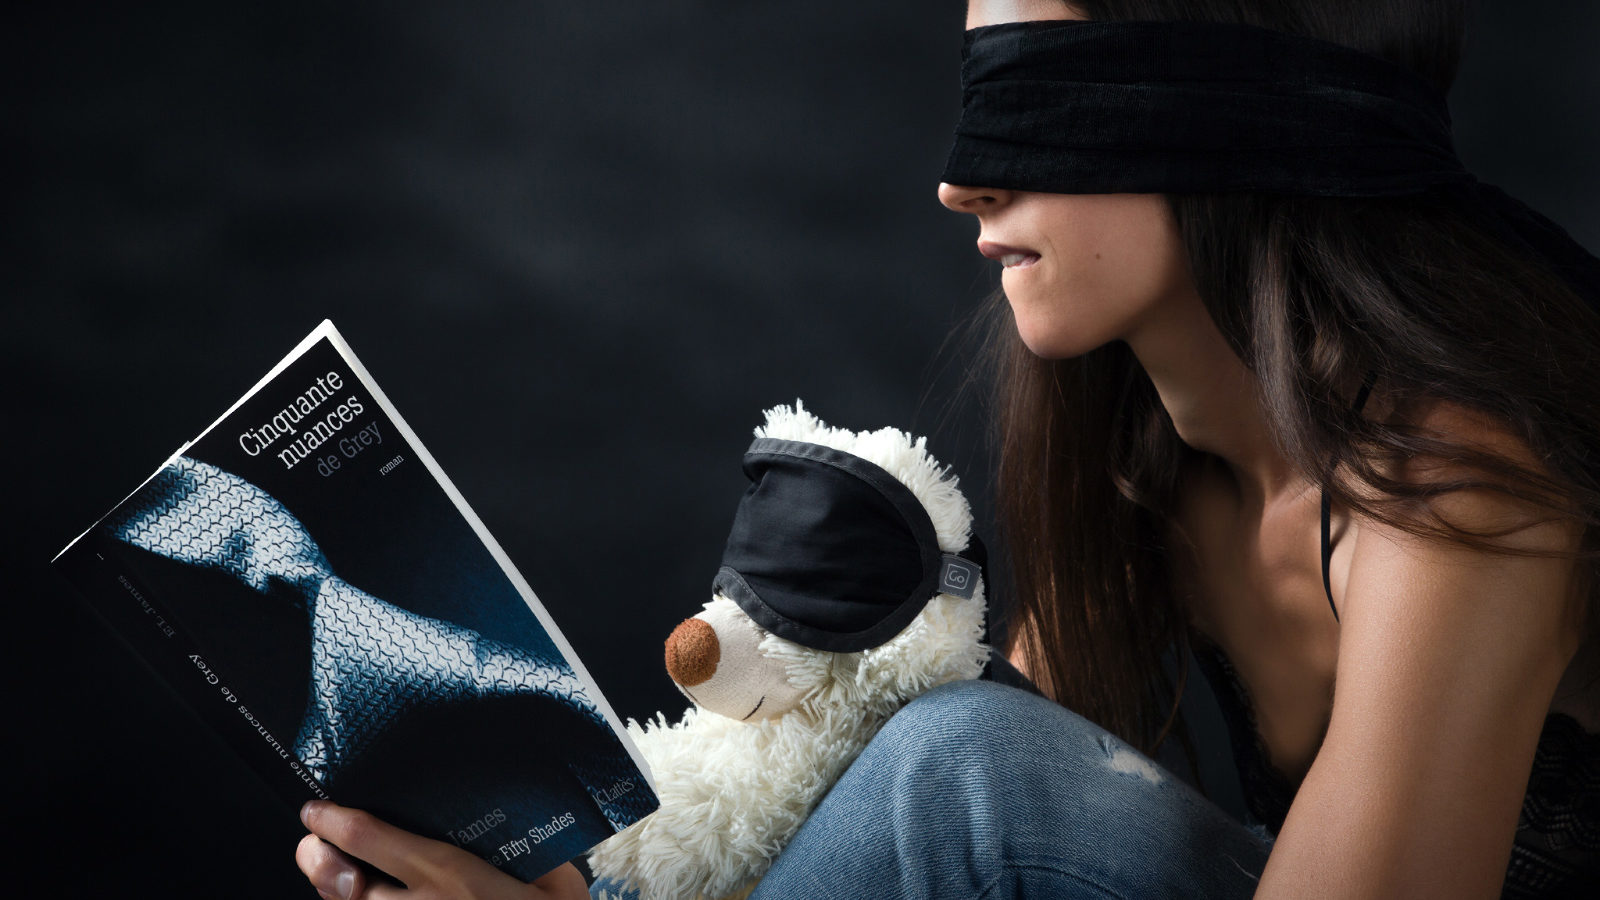 Un ours en peluche et un modèle photo, les yeux bandés, semblent apprécier le livre 50 Nuances de grey.